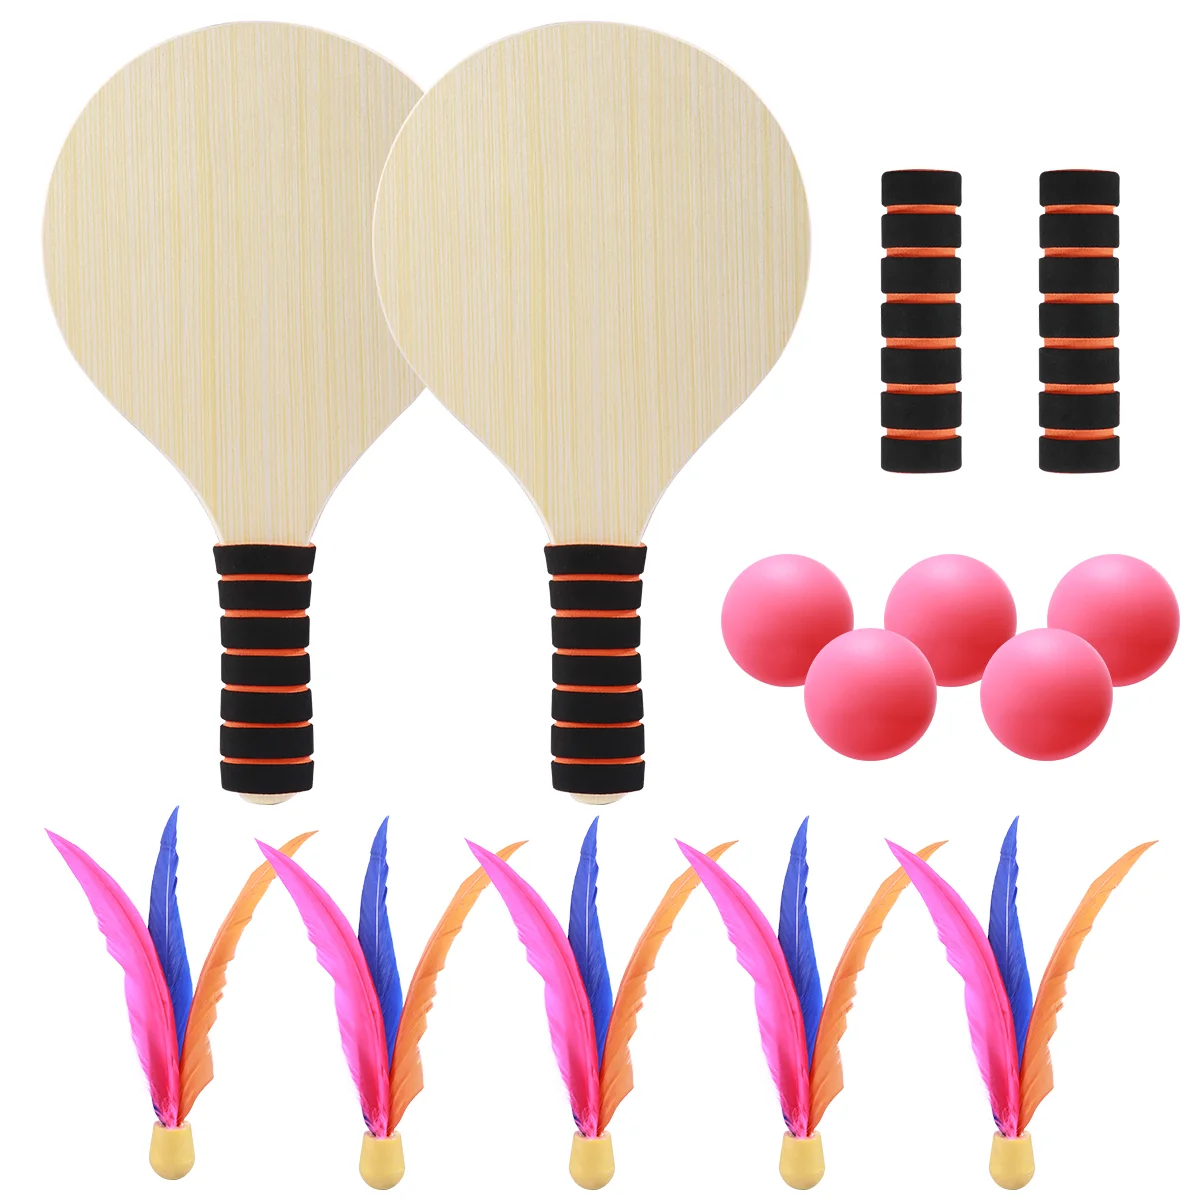 

Детские теннисные ракетки, ракетки для тенниса, игры, пляжные игрушки, набор для бадминтона для детей с 2 ракетками (случайный цвет ручки), футбол